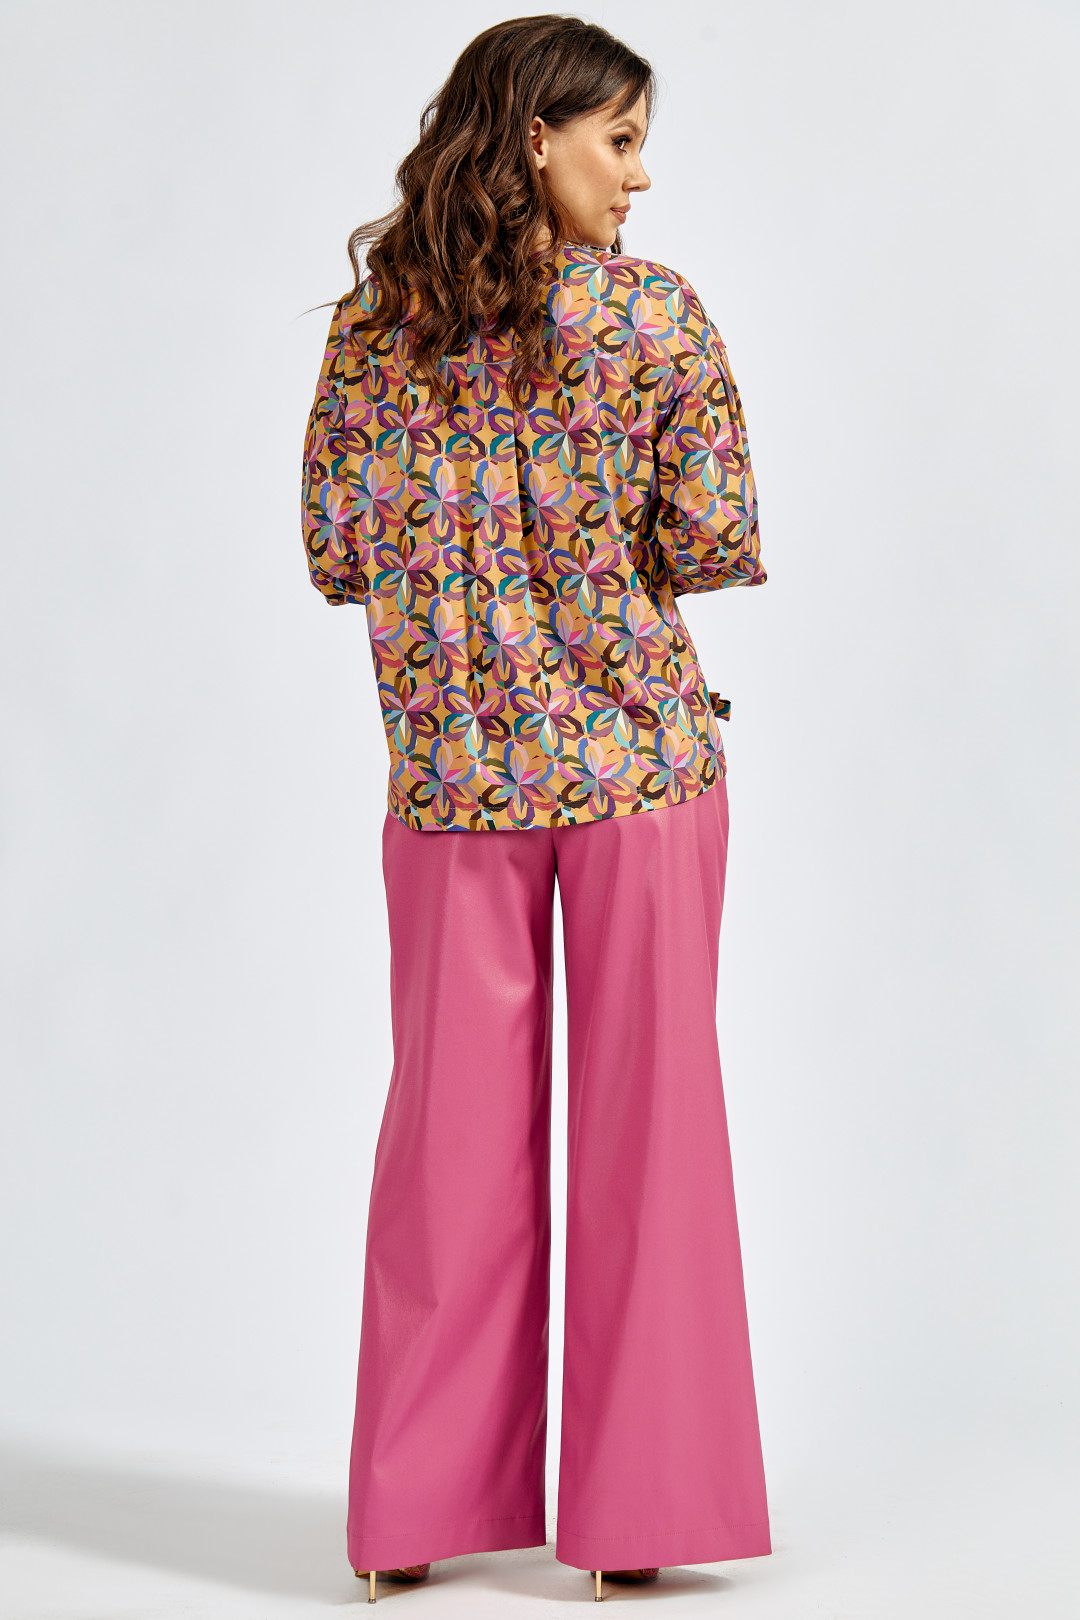 Блузка ТЭФФИ-стиль 1641 цветная фиалка